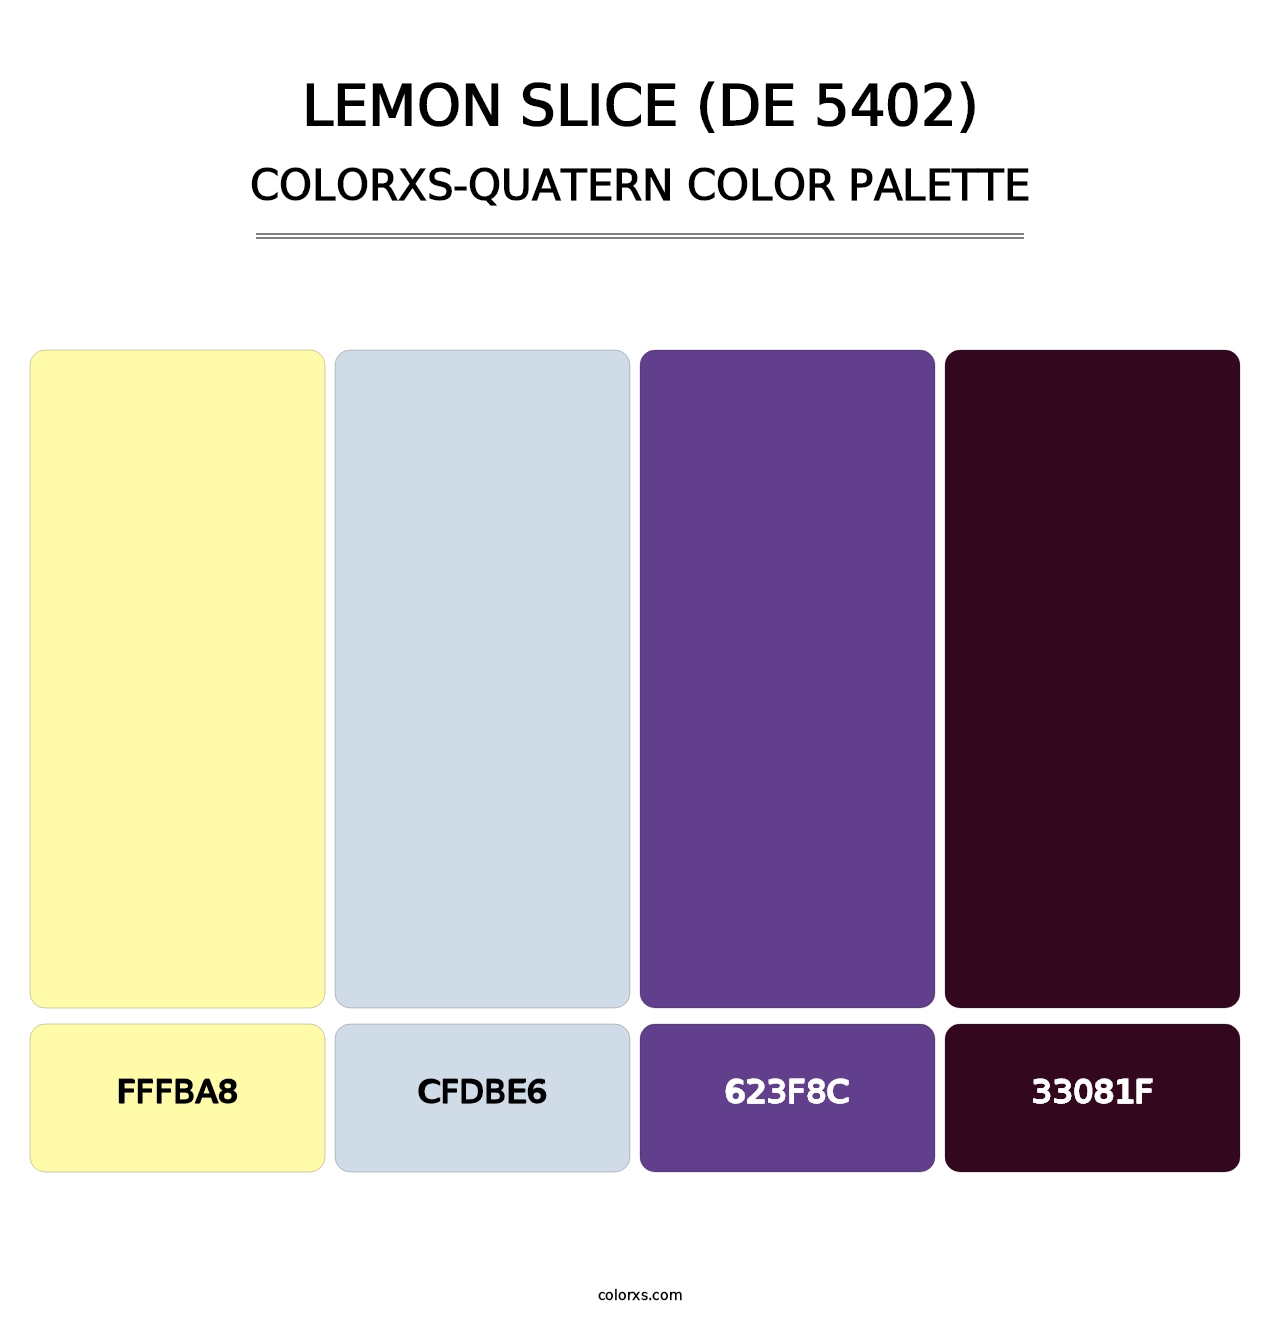 Lemon Slice (DE 5402) - Colorxs Quatern Palette